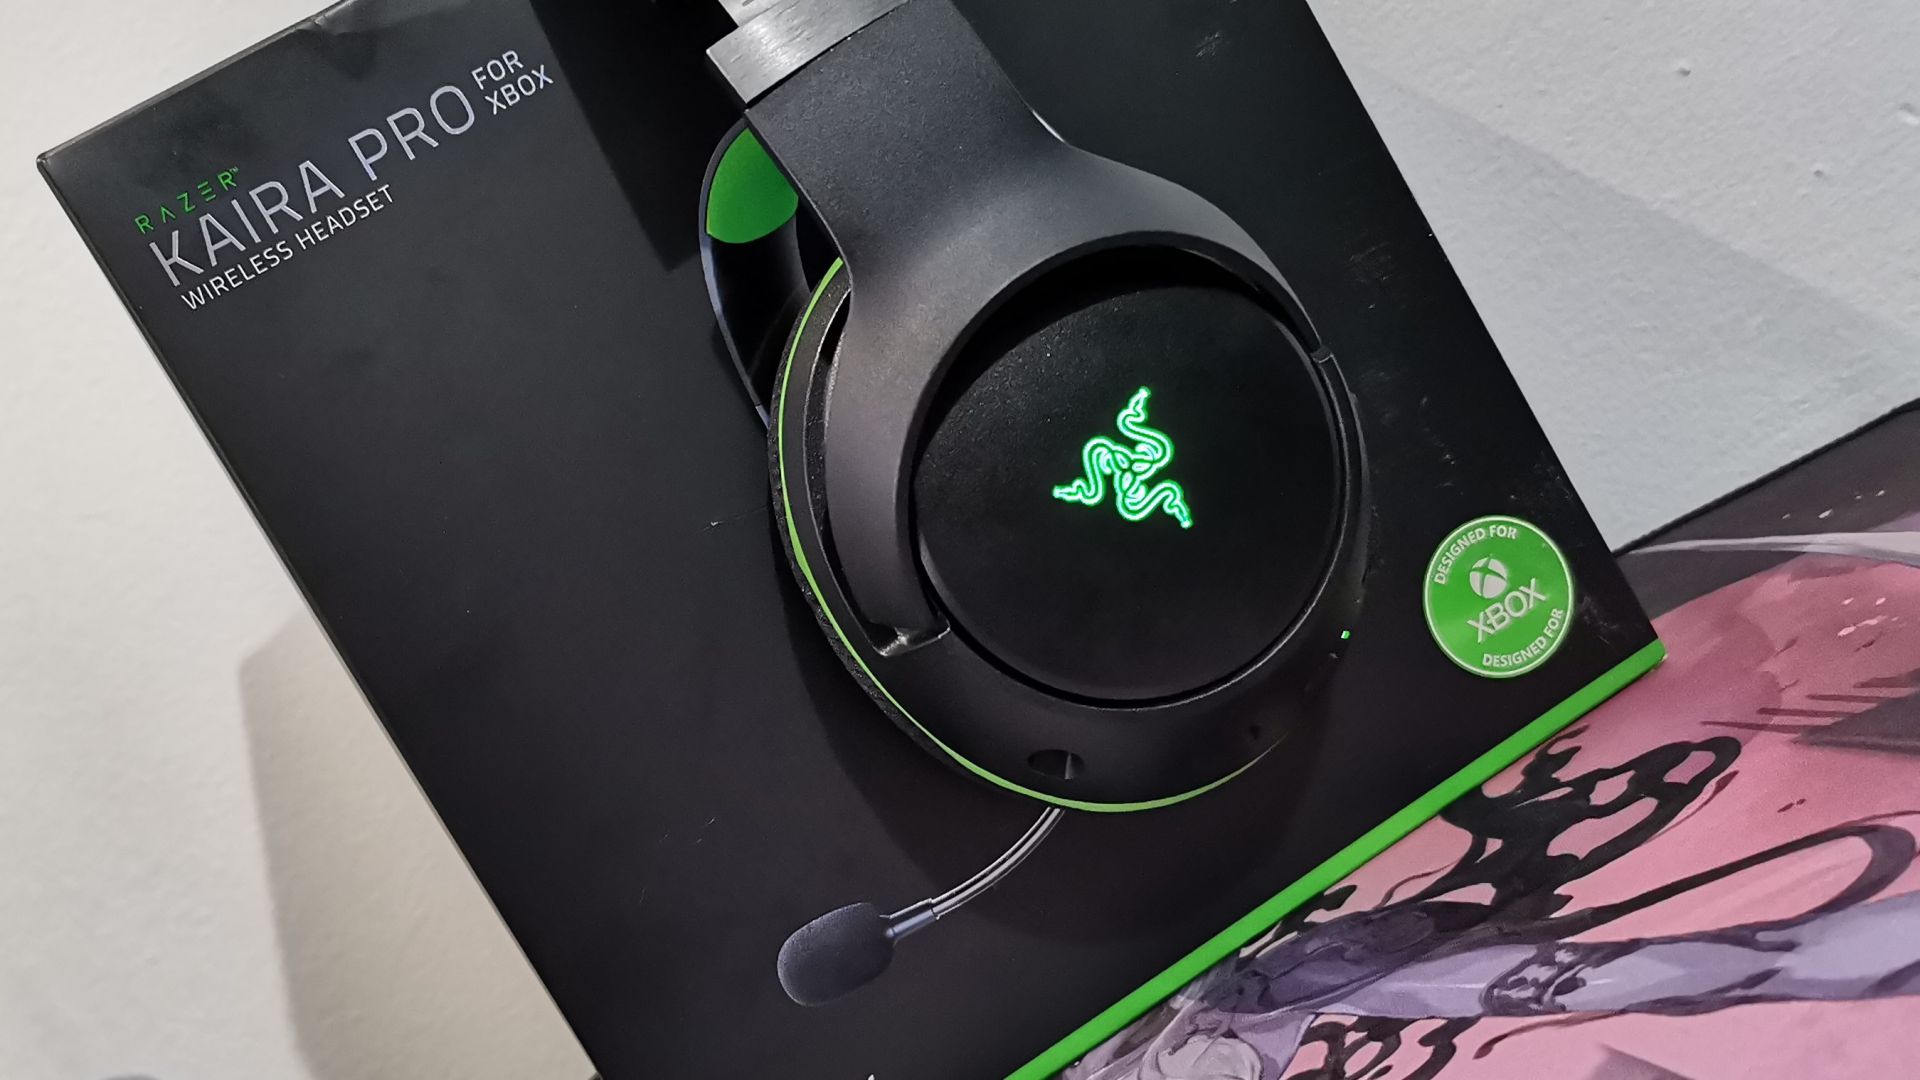 Analizamos los Razer Kaira Pro para Xbox, una experiencia sin igual - En esta ocasión os traemos nuestras impresiones tras 2 semanas de uso de los Razer Kaira Pro, unos auriculares inalámbricos sin igual exclusivos para Xbox.